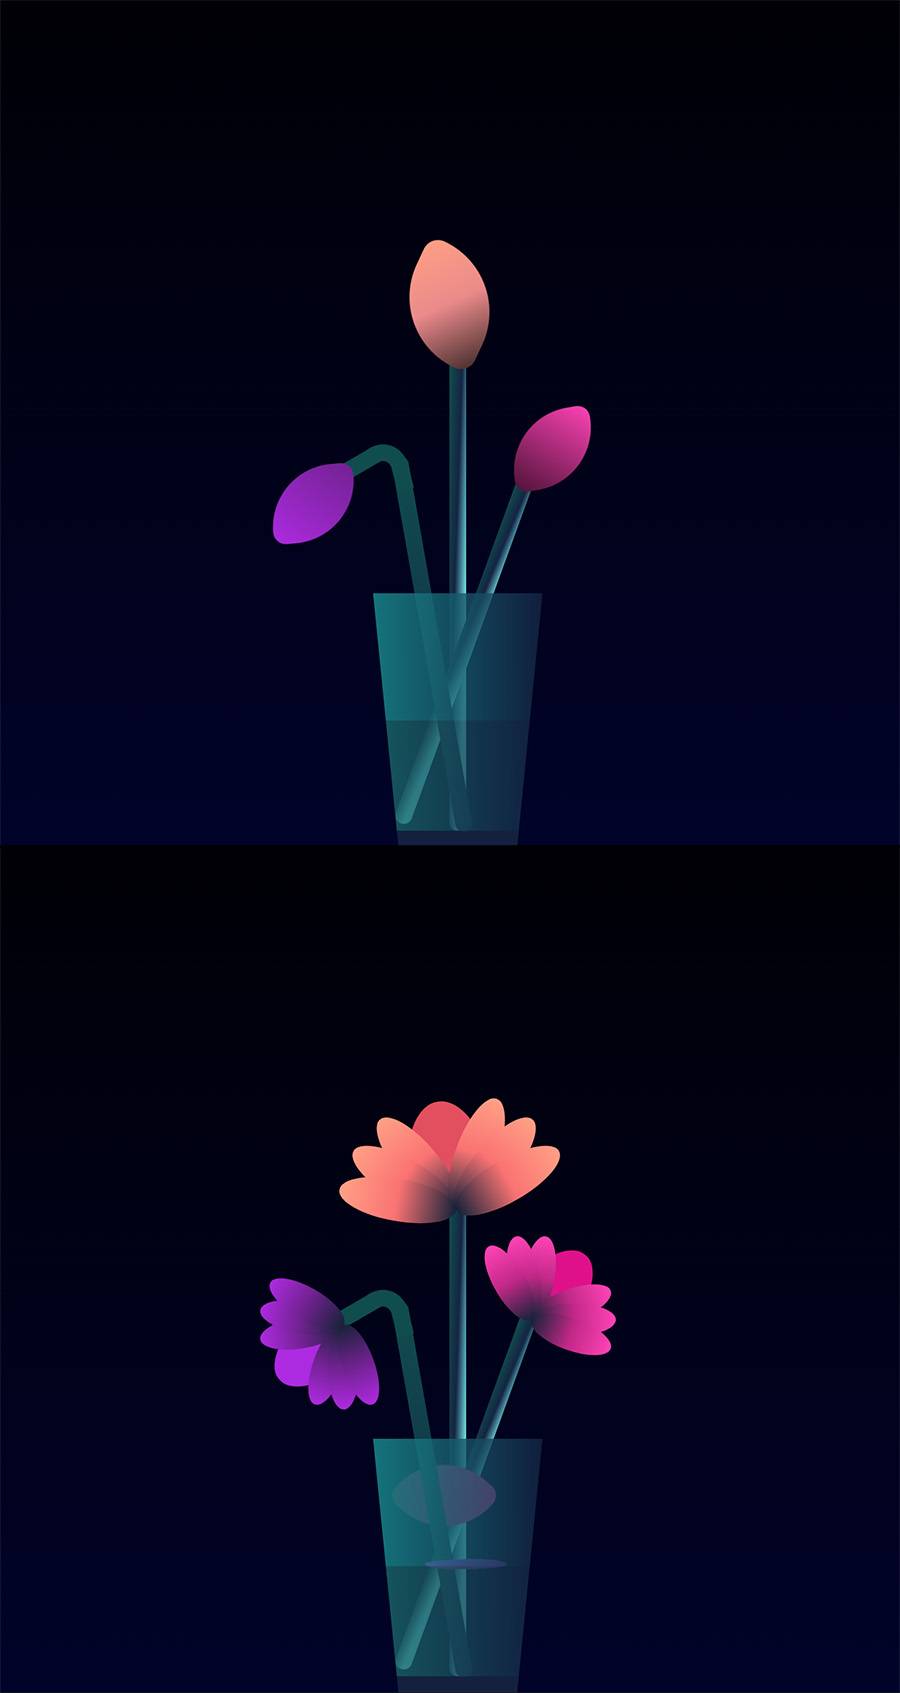 三朵不同颜色花朵同时绽放并飘落一片花瓣动画特效